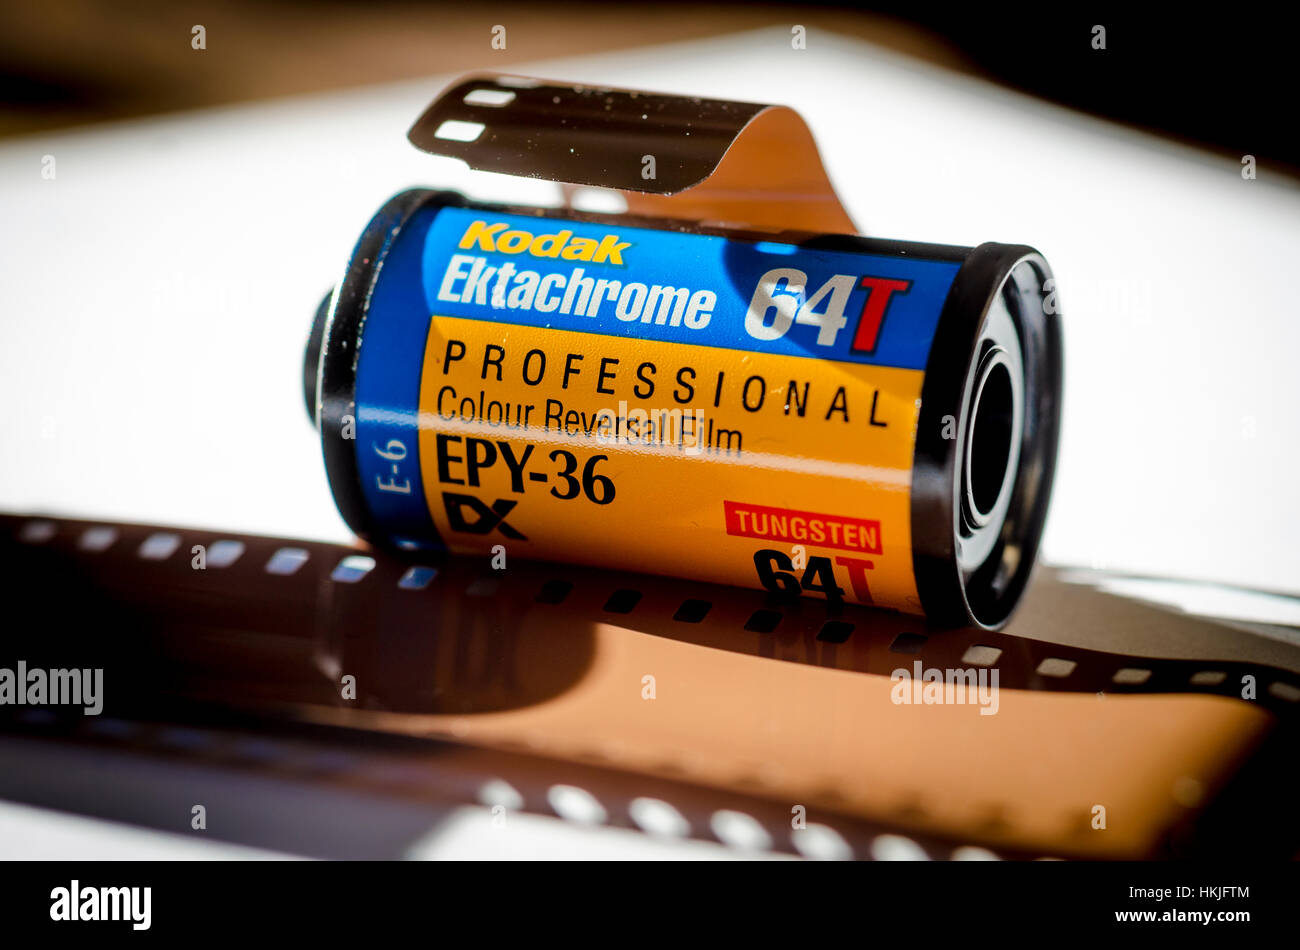 Ektachrome 35mm Transparency Film Stock Photo